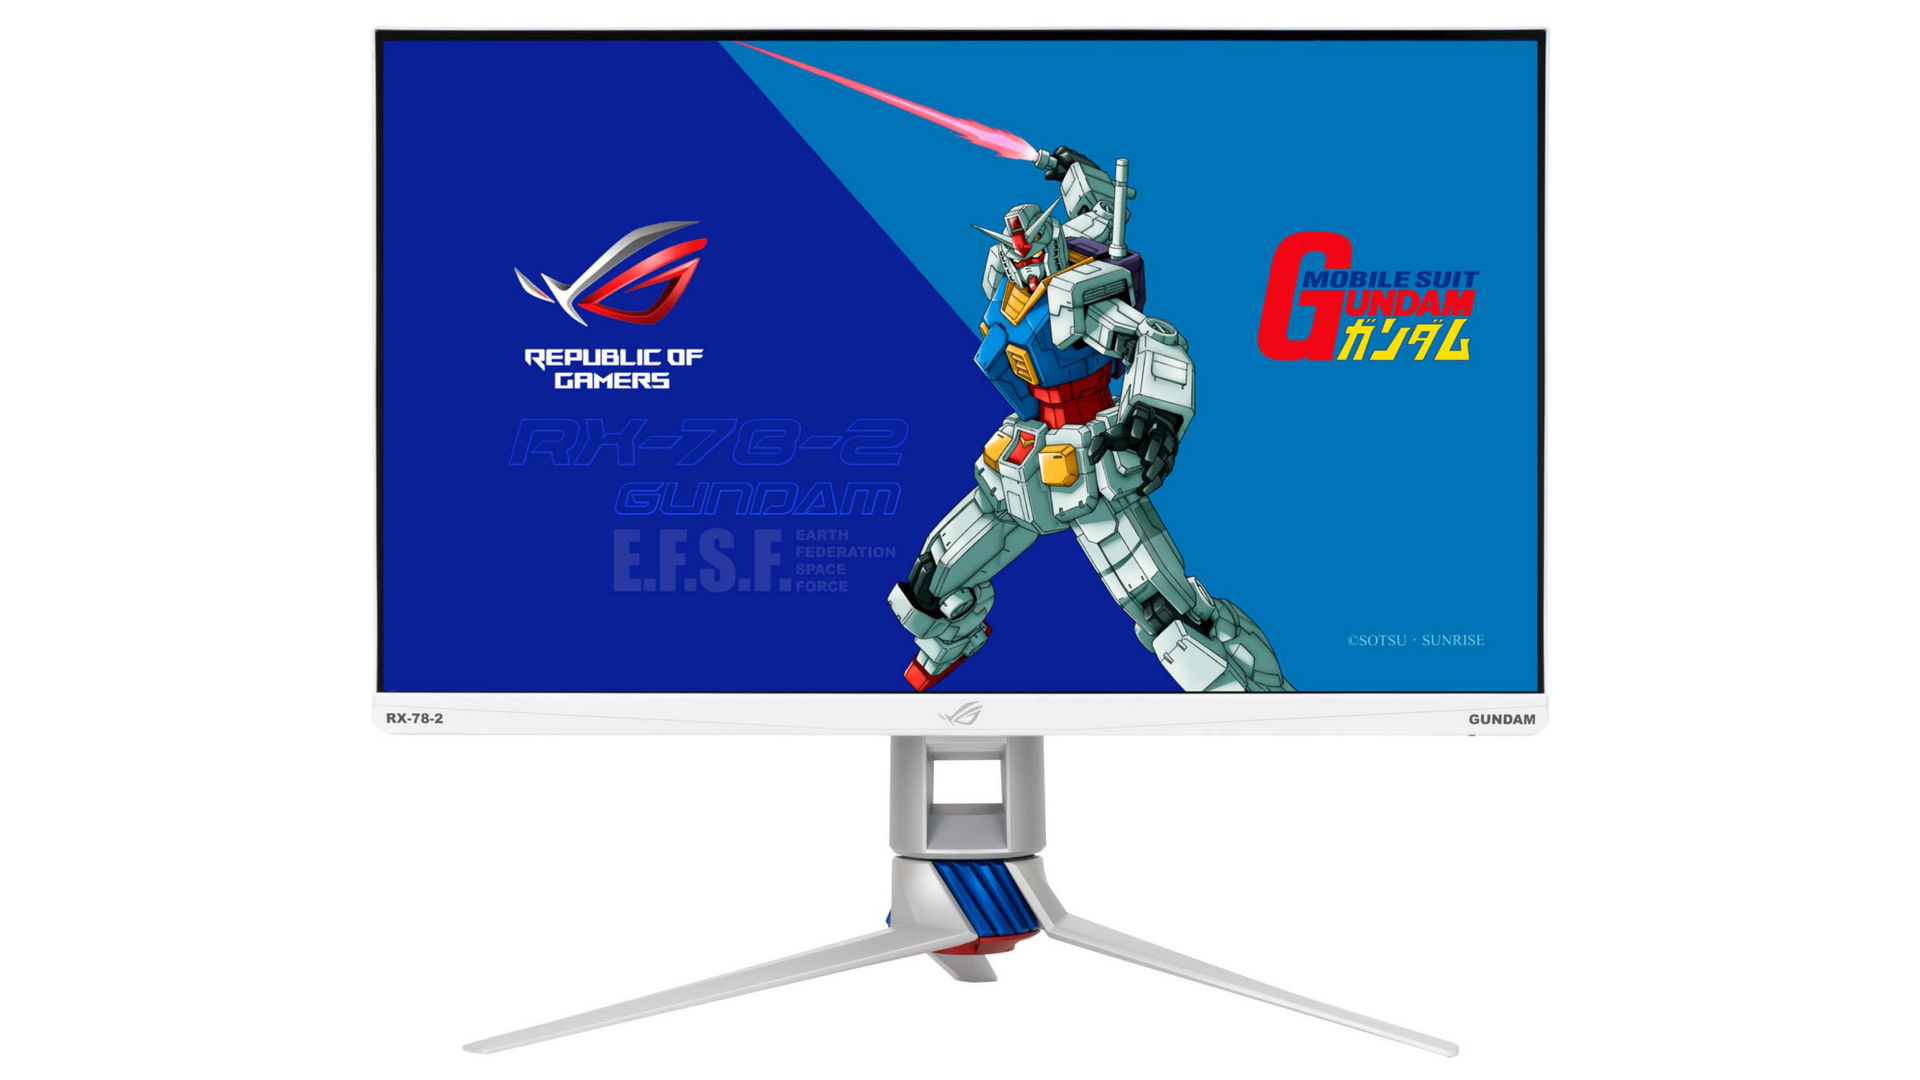 Với màn hình Asus ROG Strix XG279Q-G Gundam Edition, bạn sẽ được trải nghiệm một màn hình chất lượng cao, có tính năng độ phân giải cực cao và khả năng hiển thị màu sắc đầy sắc nét. Hãy cùng hòa mình vào màn hình máy tính với hình ảnh siêu thực và đặc biệt chỉ có tại Asus ROG Strix XG279Q-G Gundam Edition.